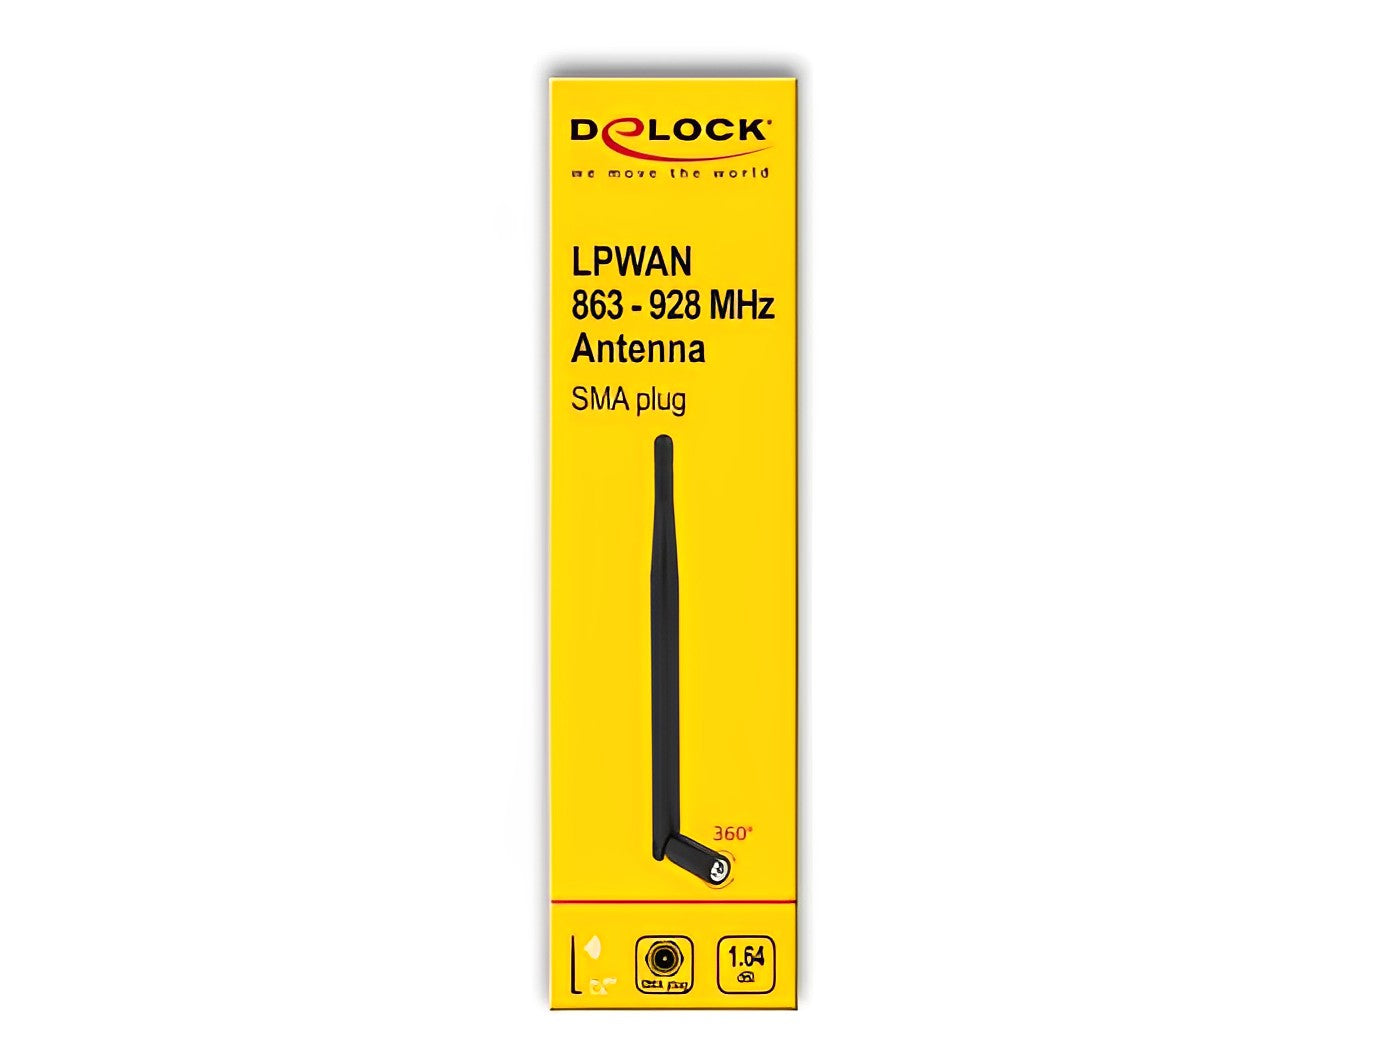 אנטנה כלל כיוונית LPWAN 863 MHz - 928 MHz 1.64 dBi פנימית מחבר SMA plug - delock.israel